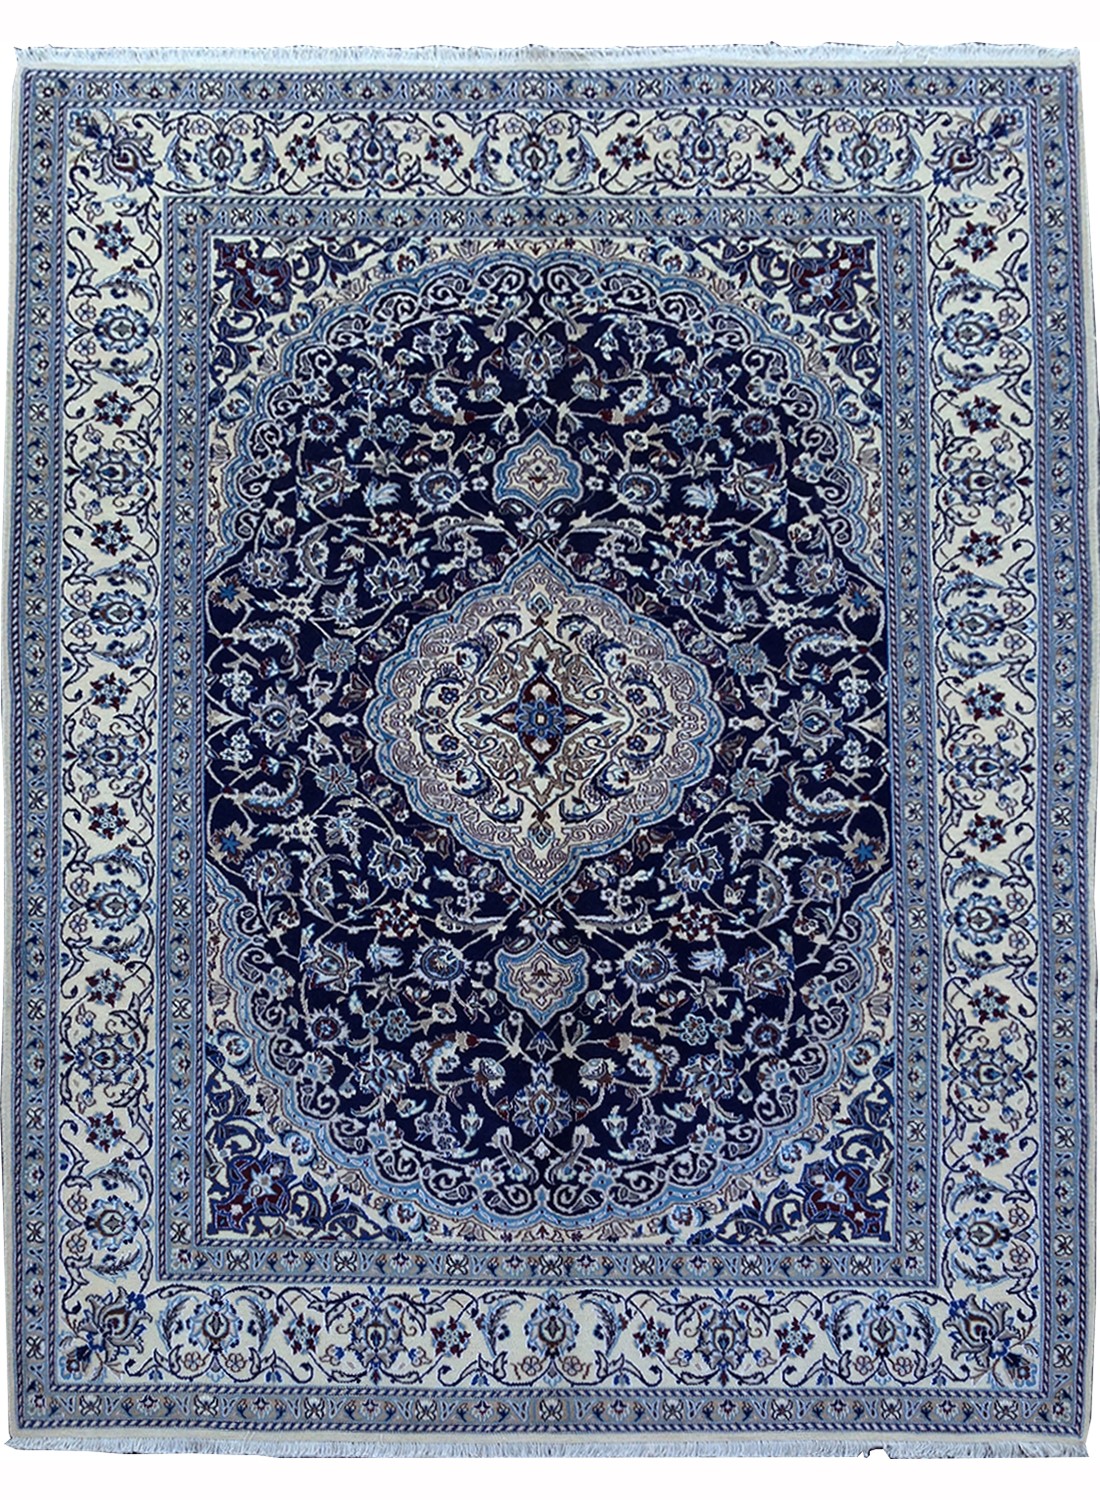 magnifique tapis en couelur bleu